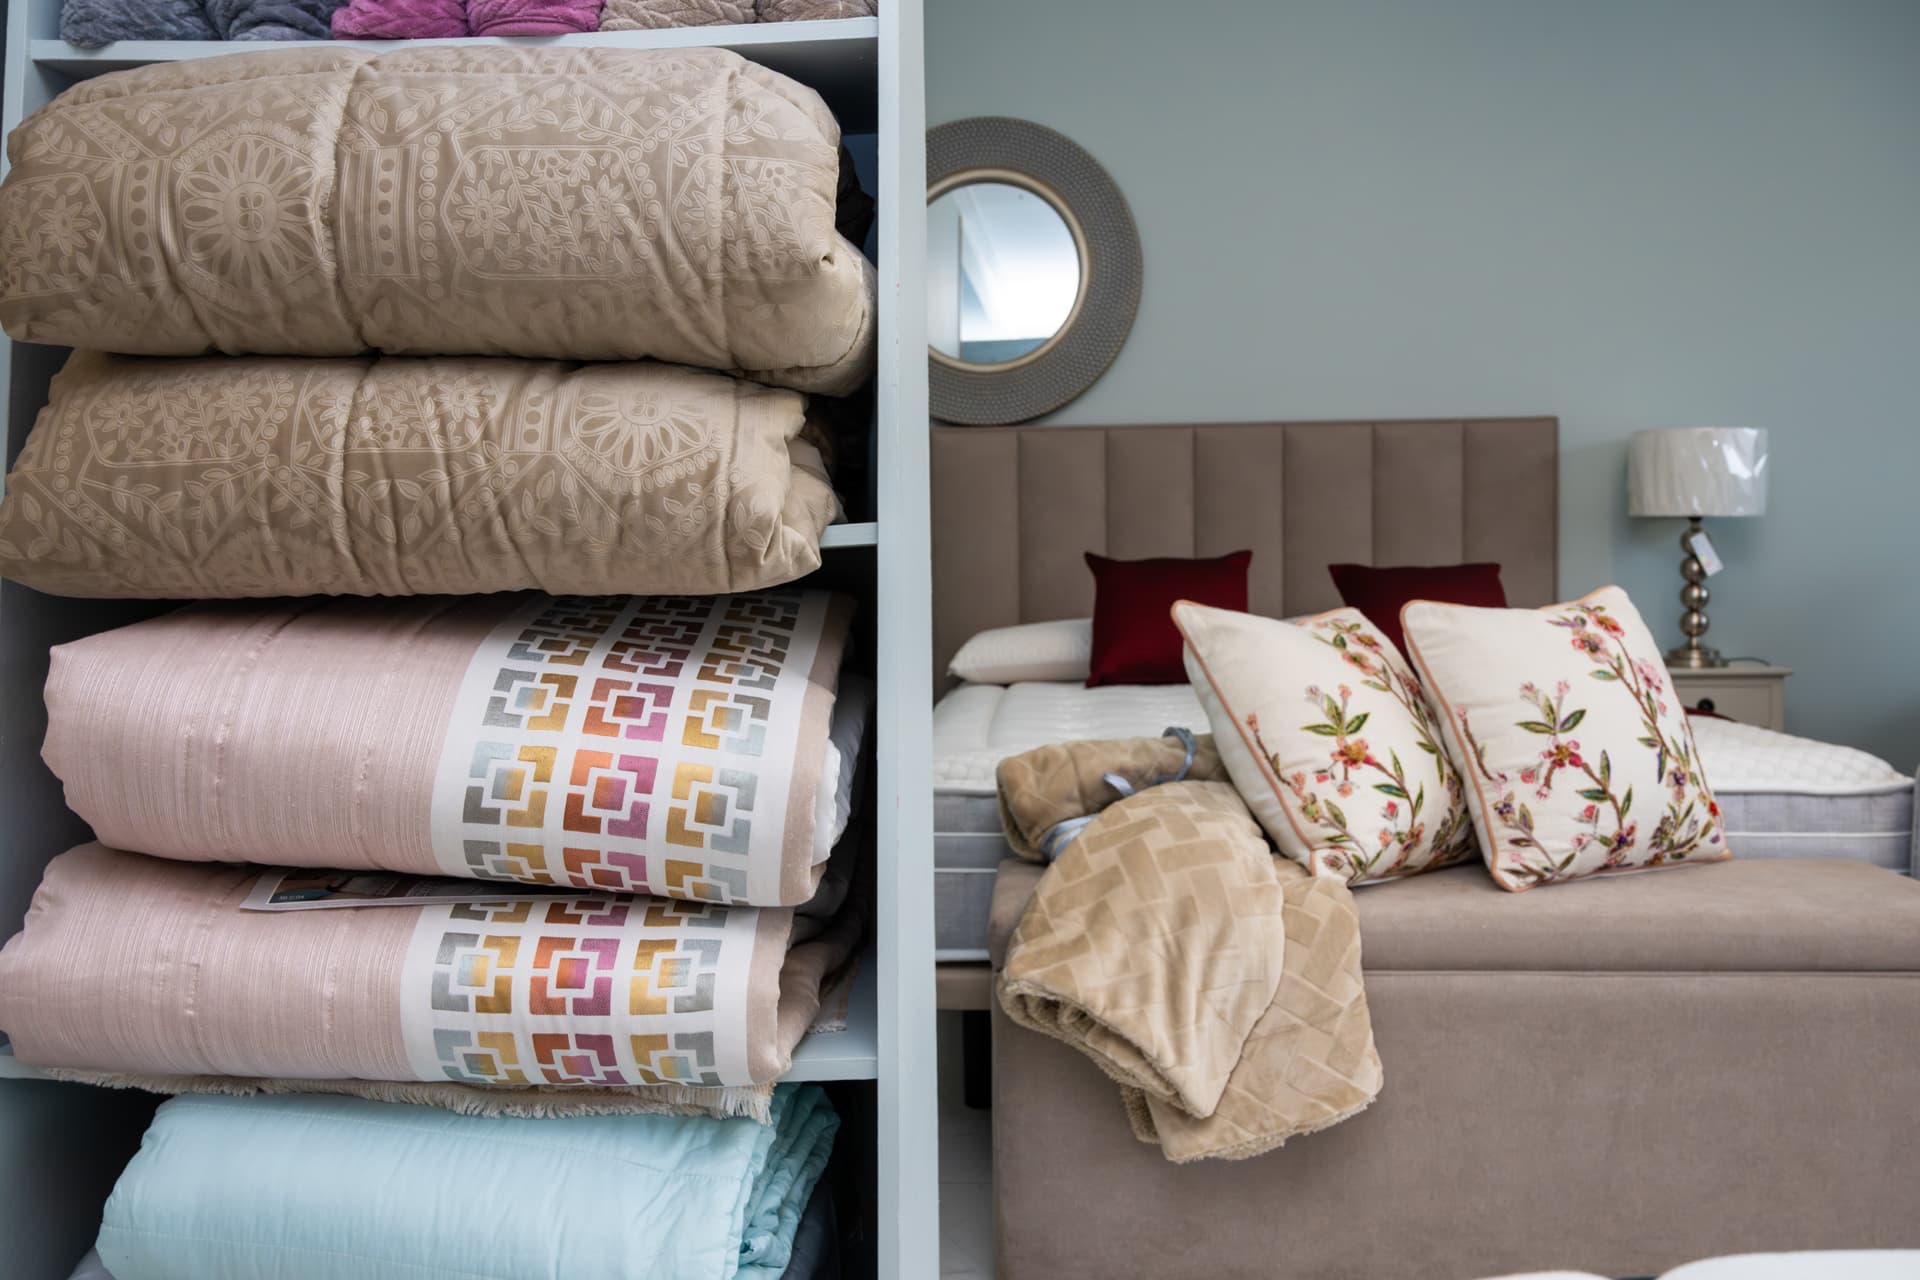 Te ofrecemos las mejores almohadas y los textiles de mayor calidad